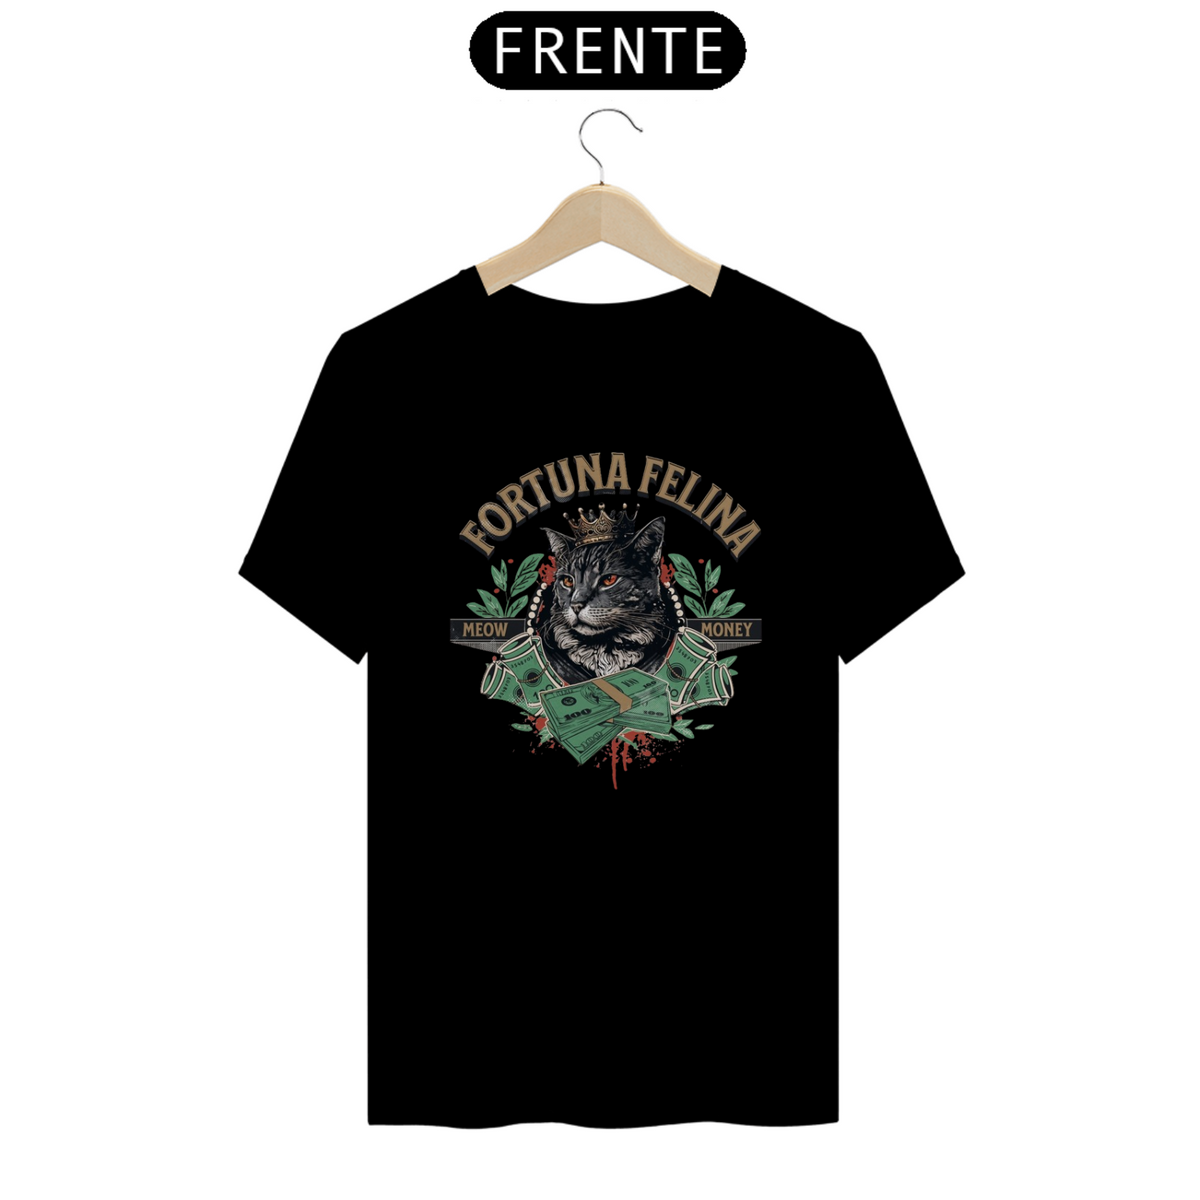 Nome do produto: Camisa-Fortuna Felina